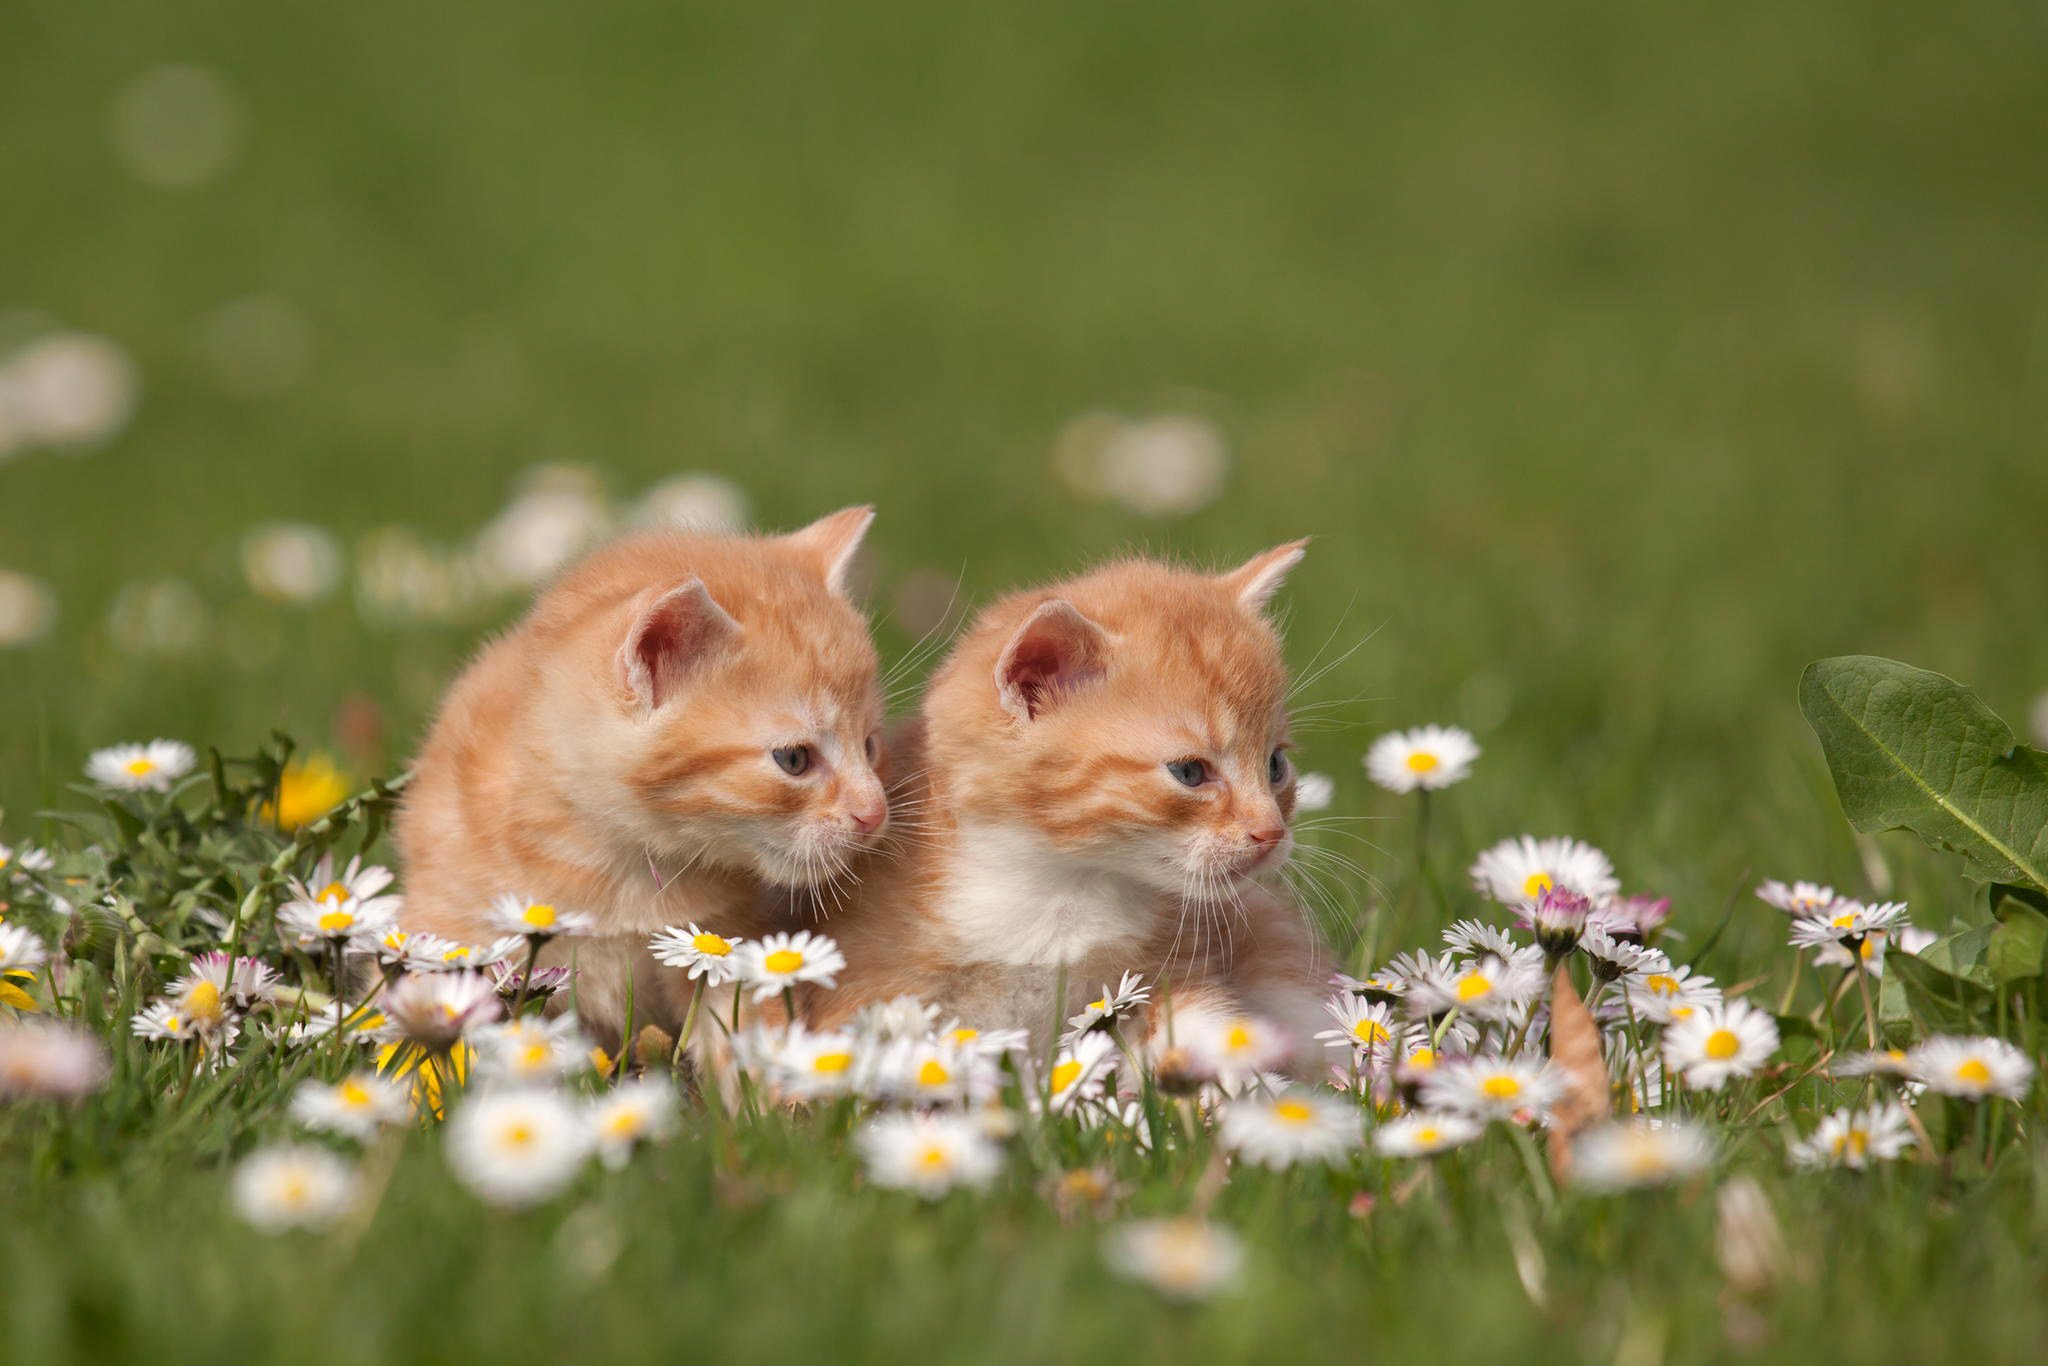 kittens, Redheads, Grass, Flowers Wallpaper